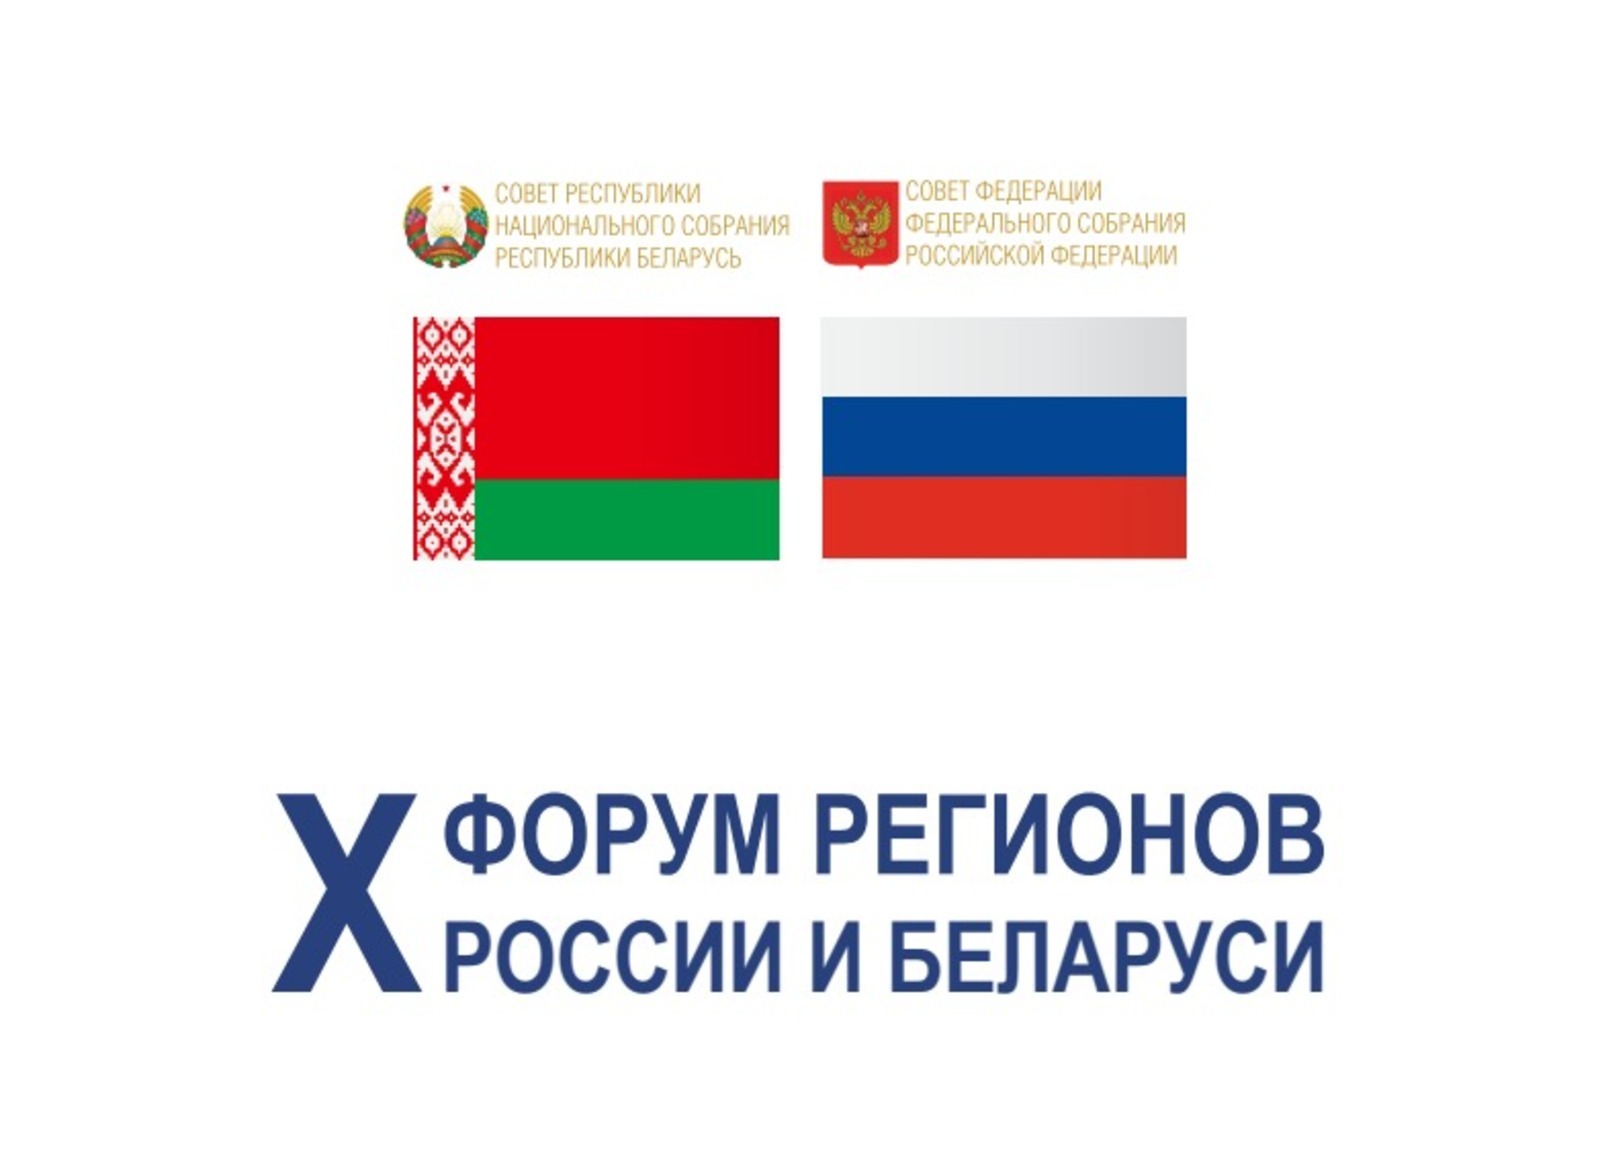 На Х форуме регионов России и Беларуси в столице Башкирии обсудят направления взаимовыгодного партнерства